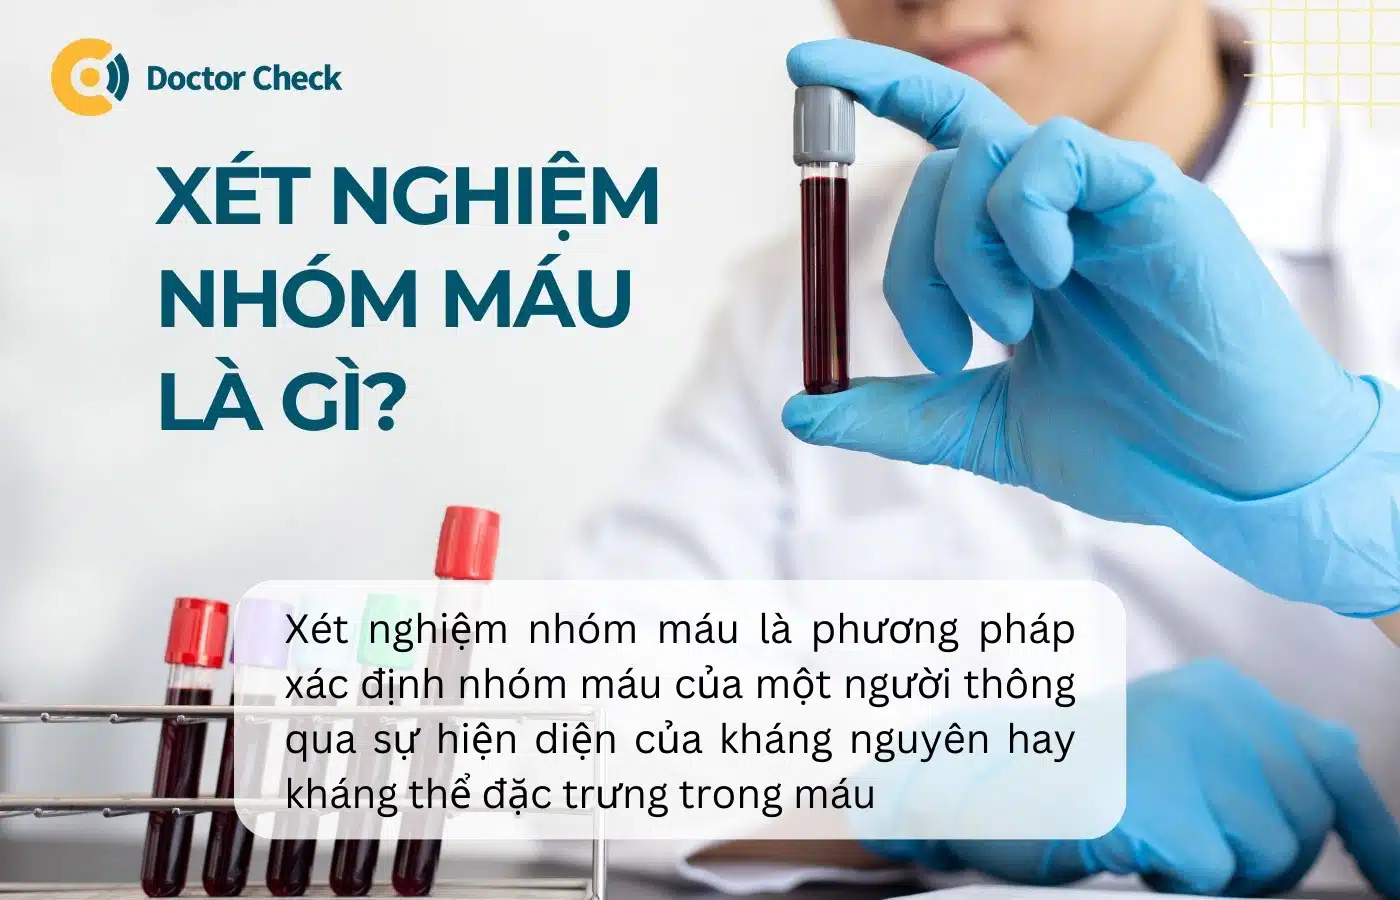 Xét nghiệm nhóm máu là gì?